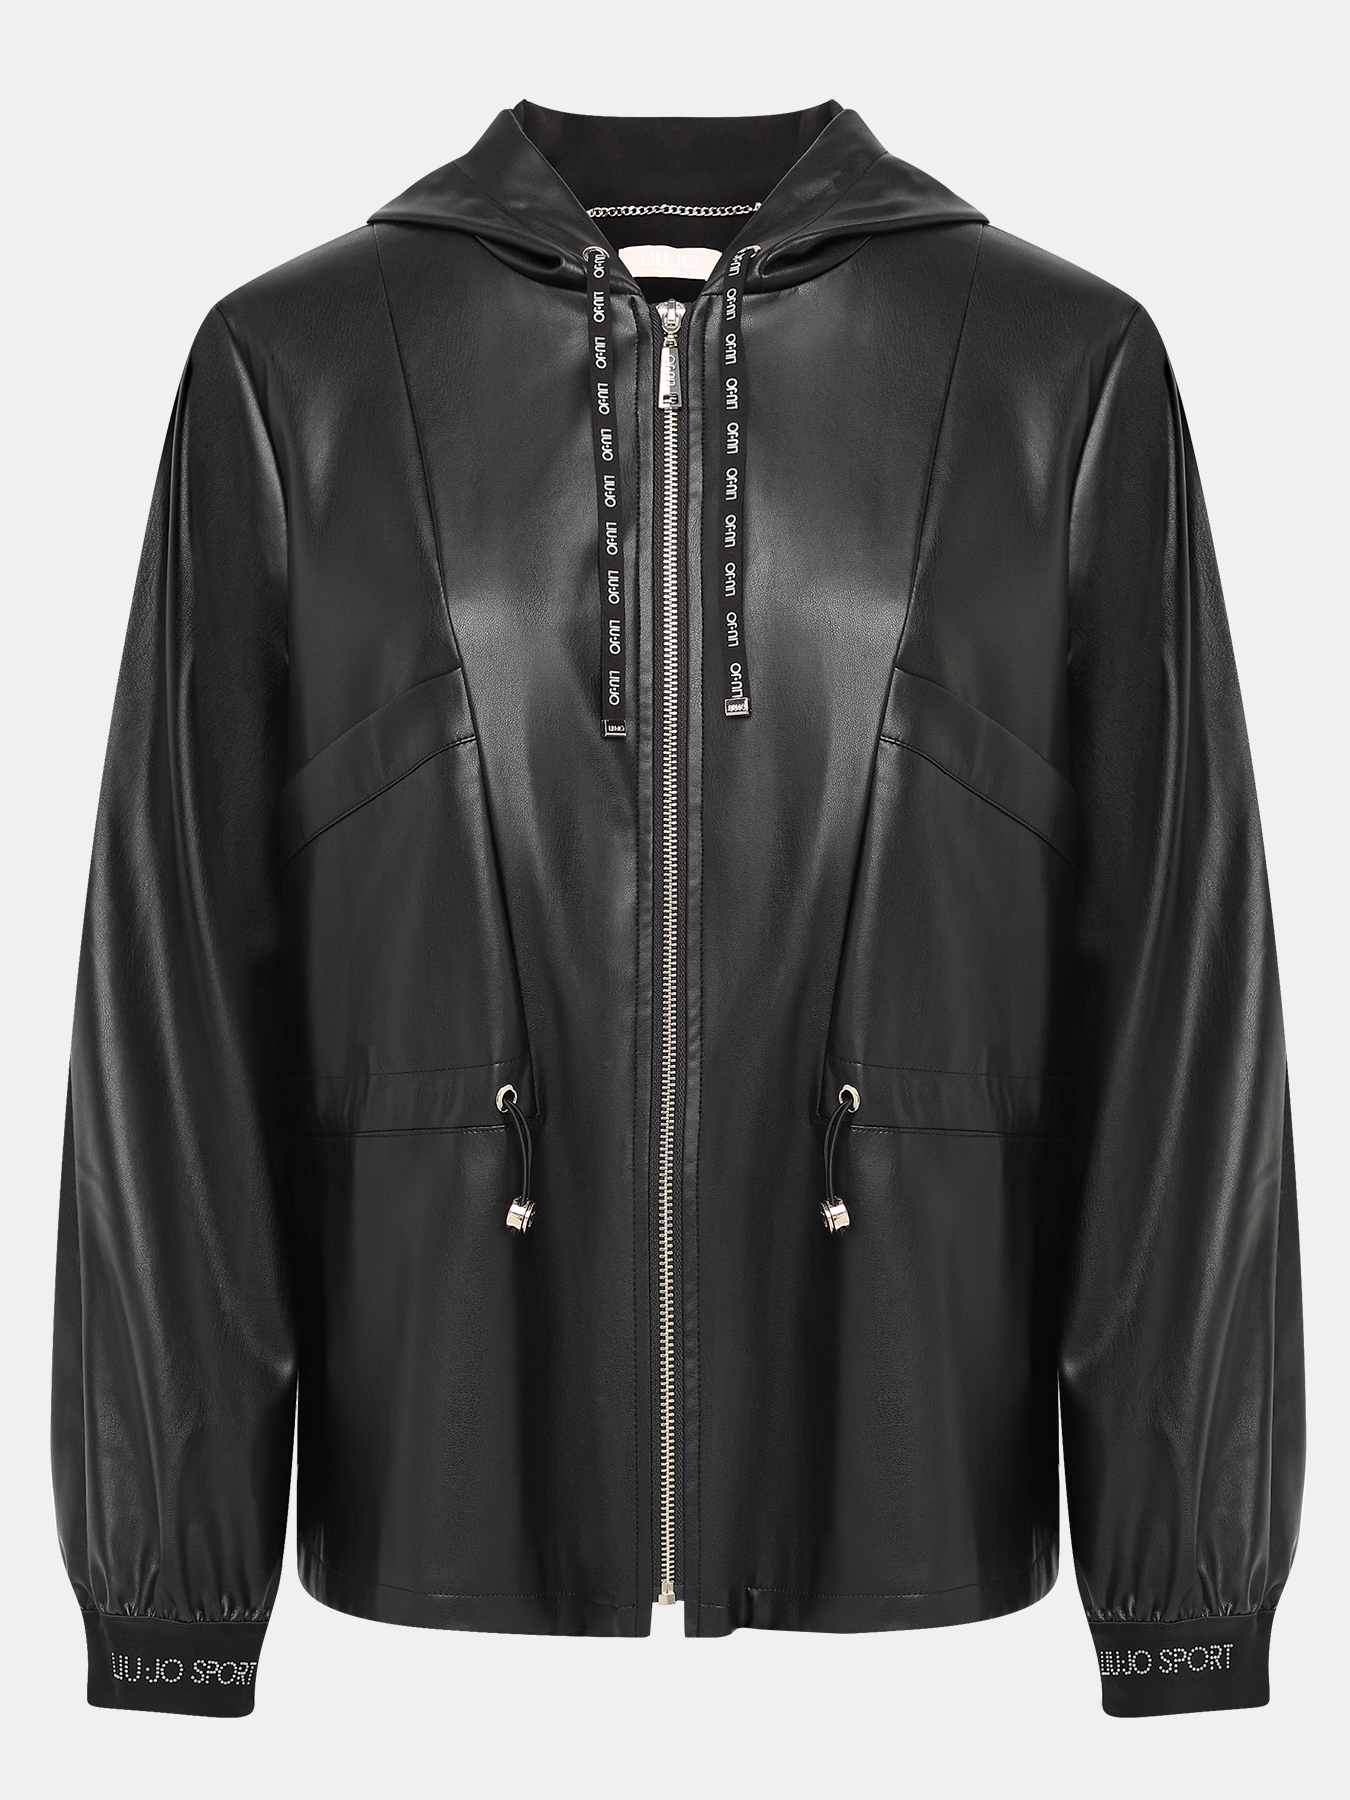 Куртка Liu Jo Sport 414791-044, цвет черный, размер 46-48